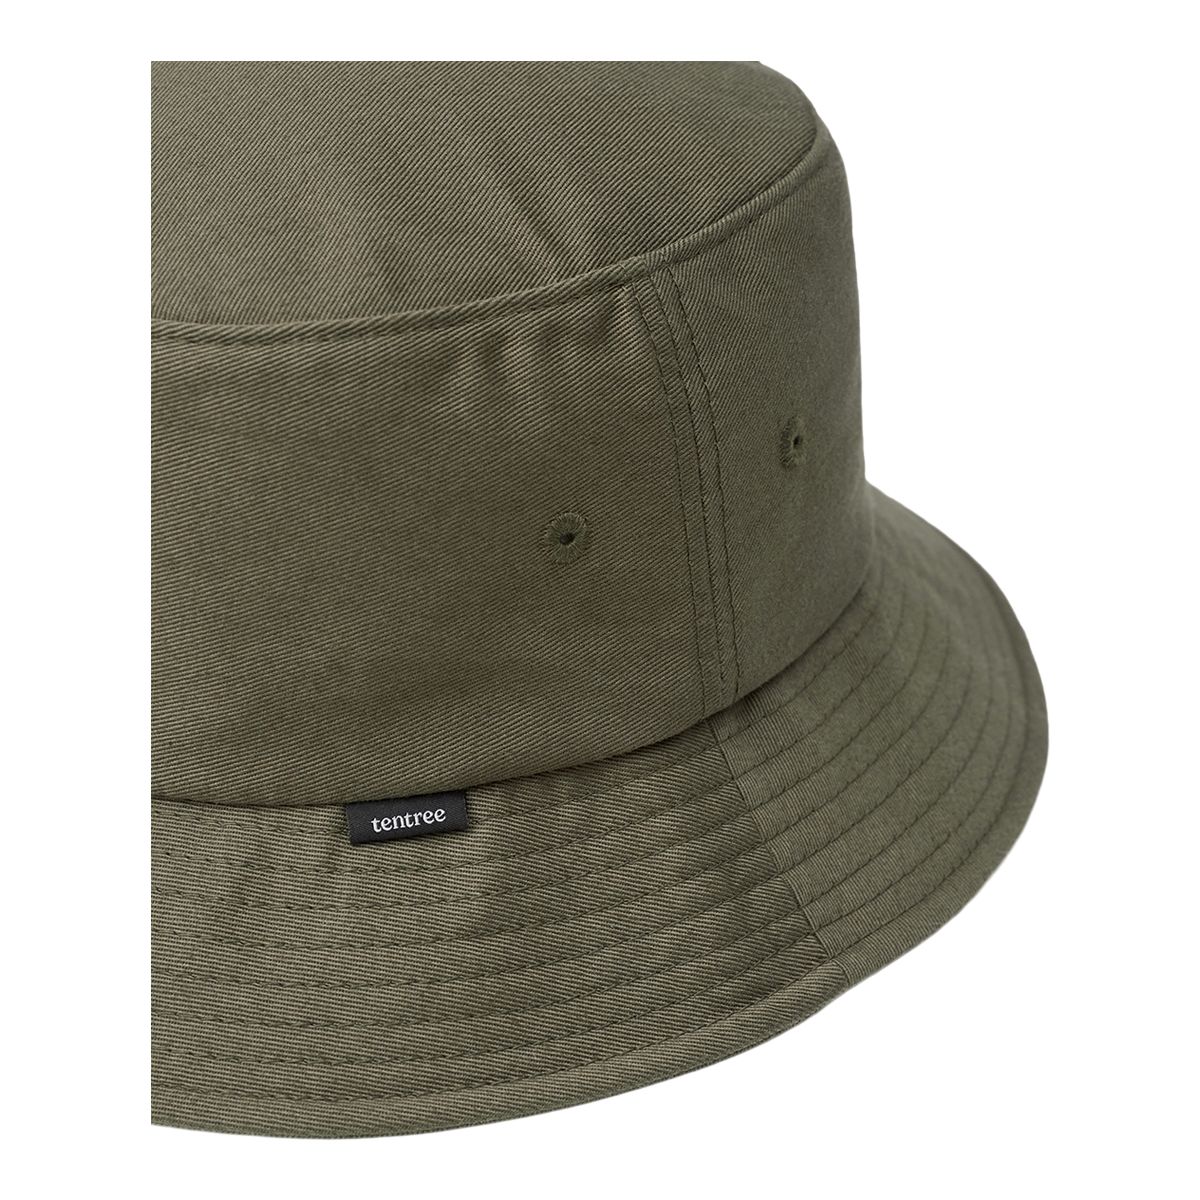 Tentree Women's Bucket Hat